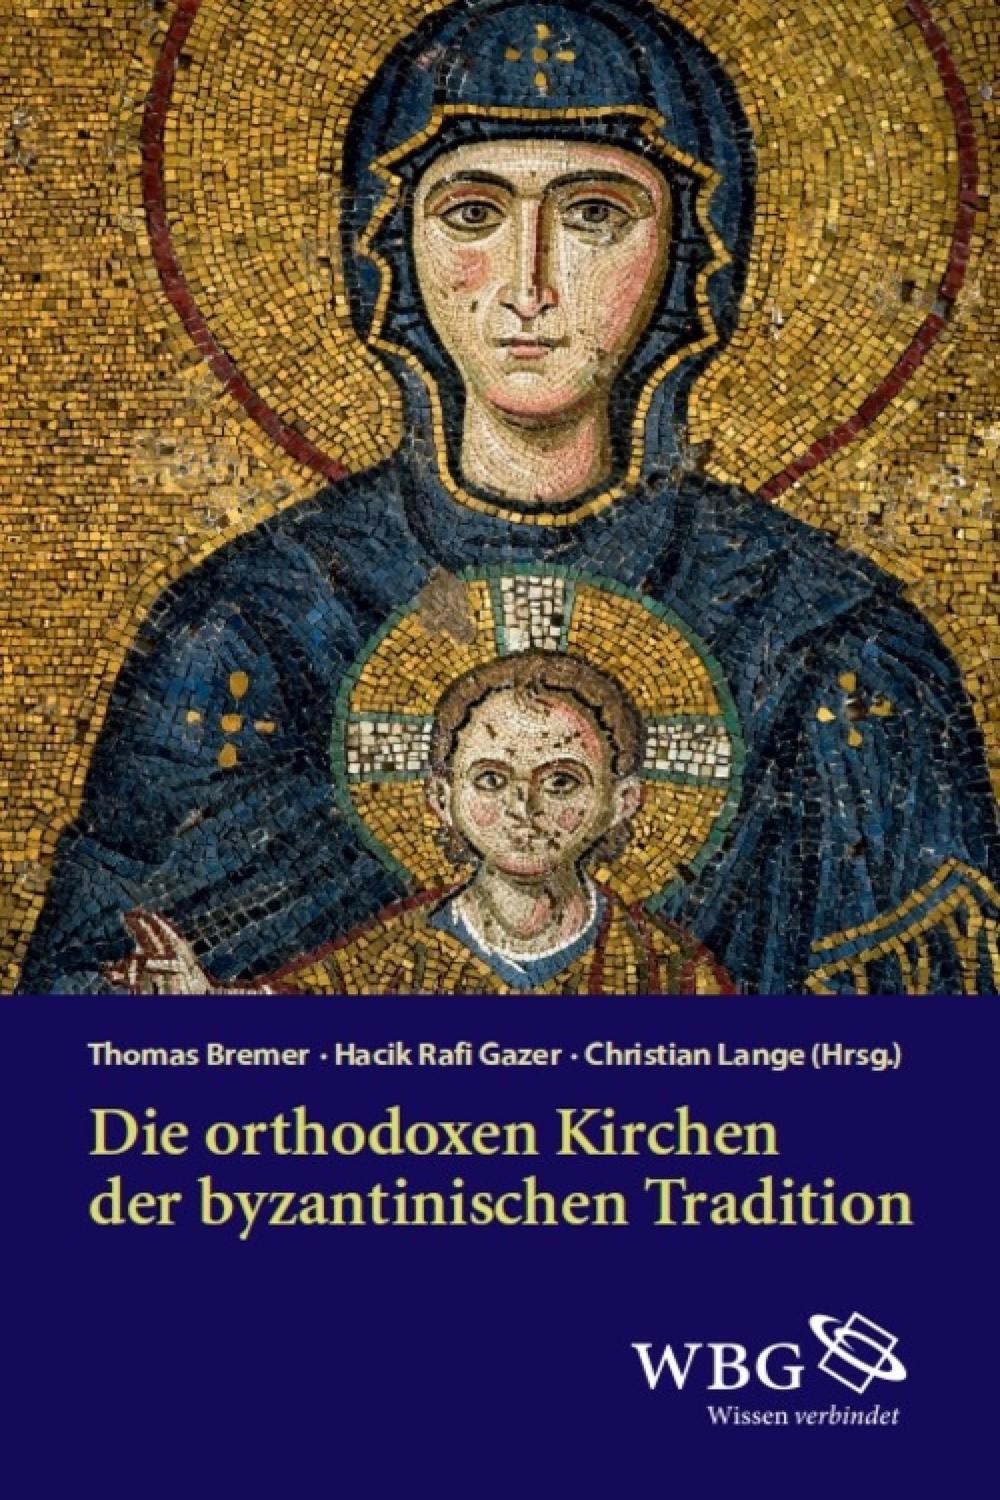 Die orthodoxen Kirchen der byzantinischen Tradition - Thomas Bremer, Hacik Rafi Gazer, Christian Lange